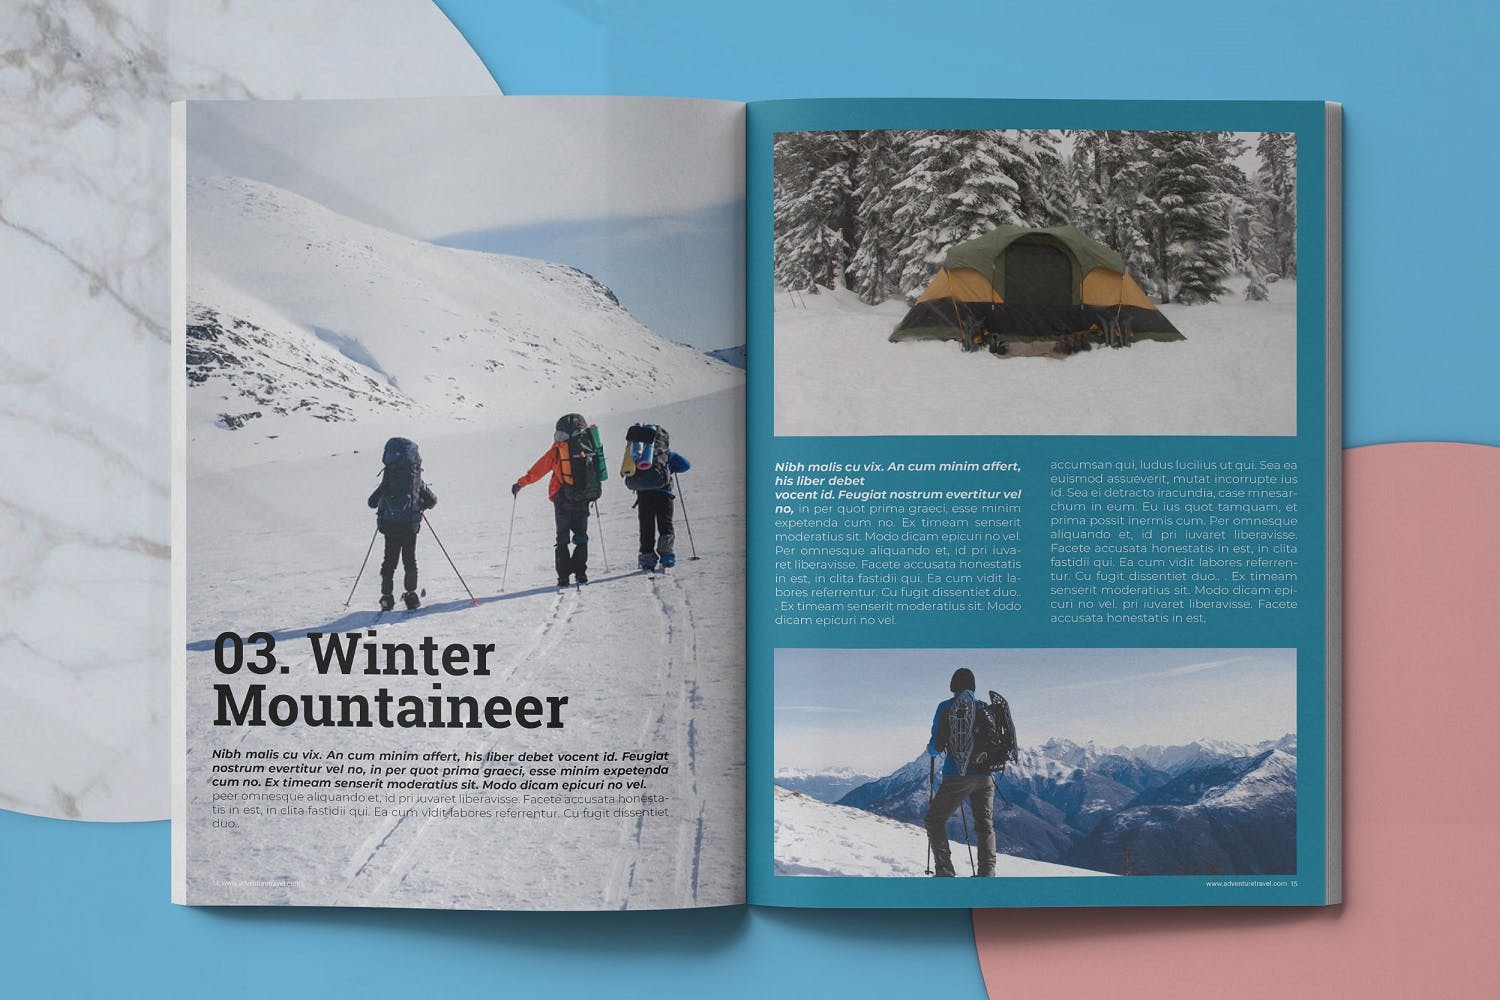 冒险旅行主题素材库精选杂志排版设计模板 Adventure Travel Magazine Template插图(7)